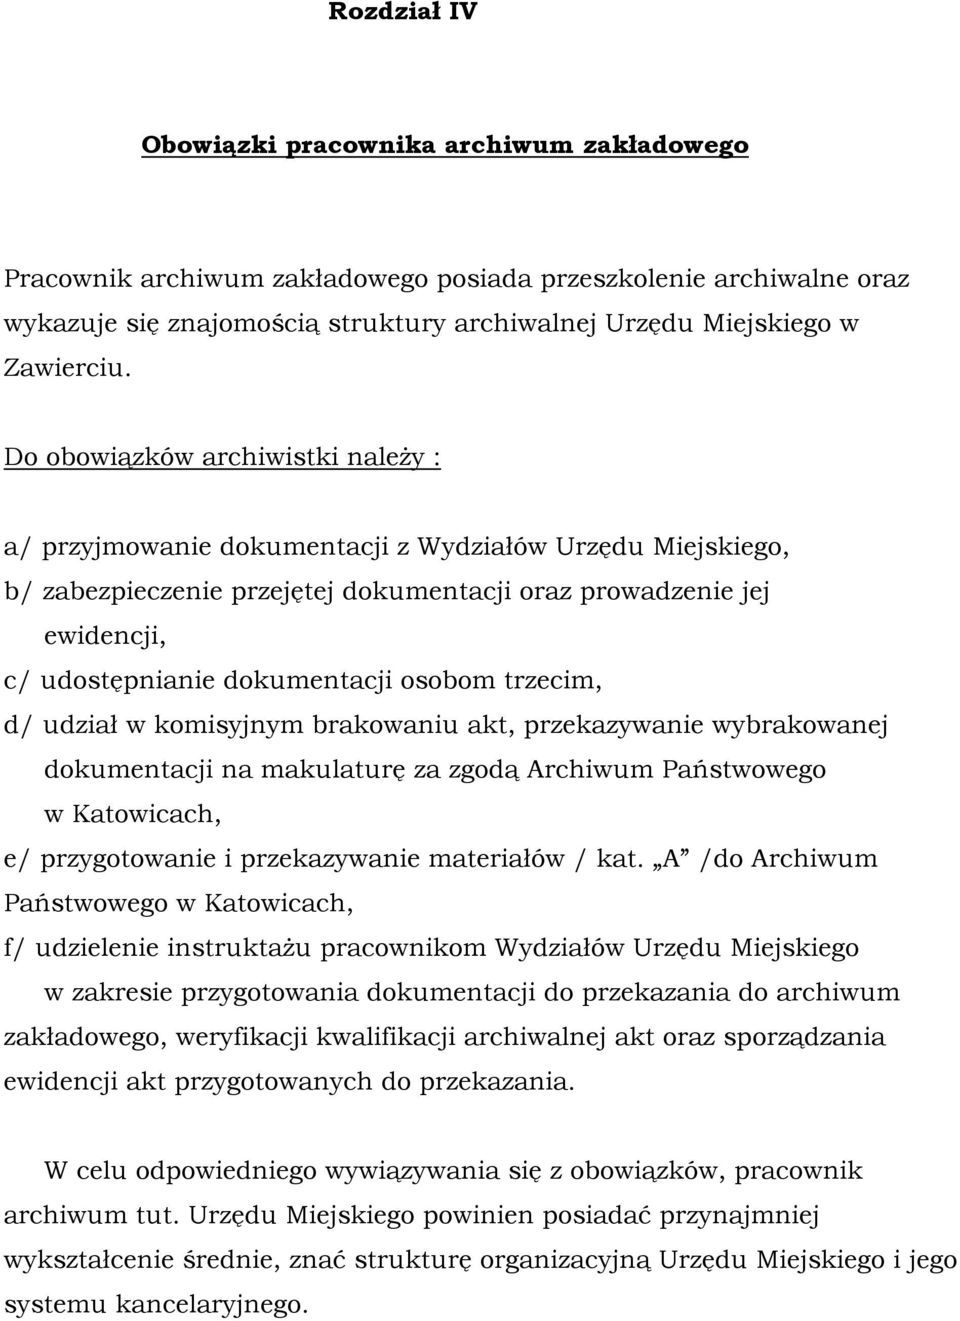 osobom trzecim, d/ udział w komisyjnym brakowaniu akt, przekazywanie wybrakowanej dokumentacji na makulaturę za zgodą Archiwum Państwowego w Katowicach, e/ przygotowanie i przekazywanie materiałów /